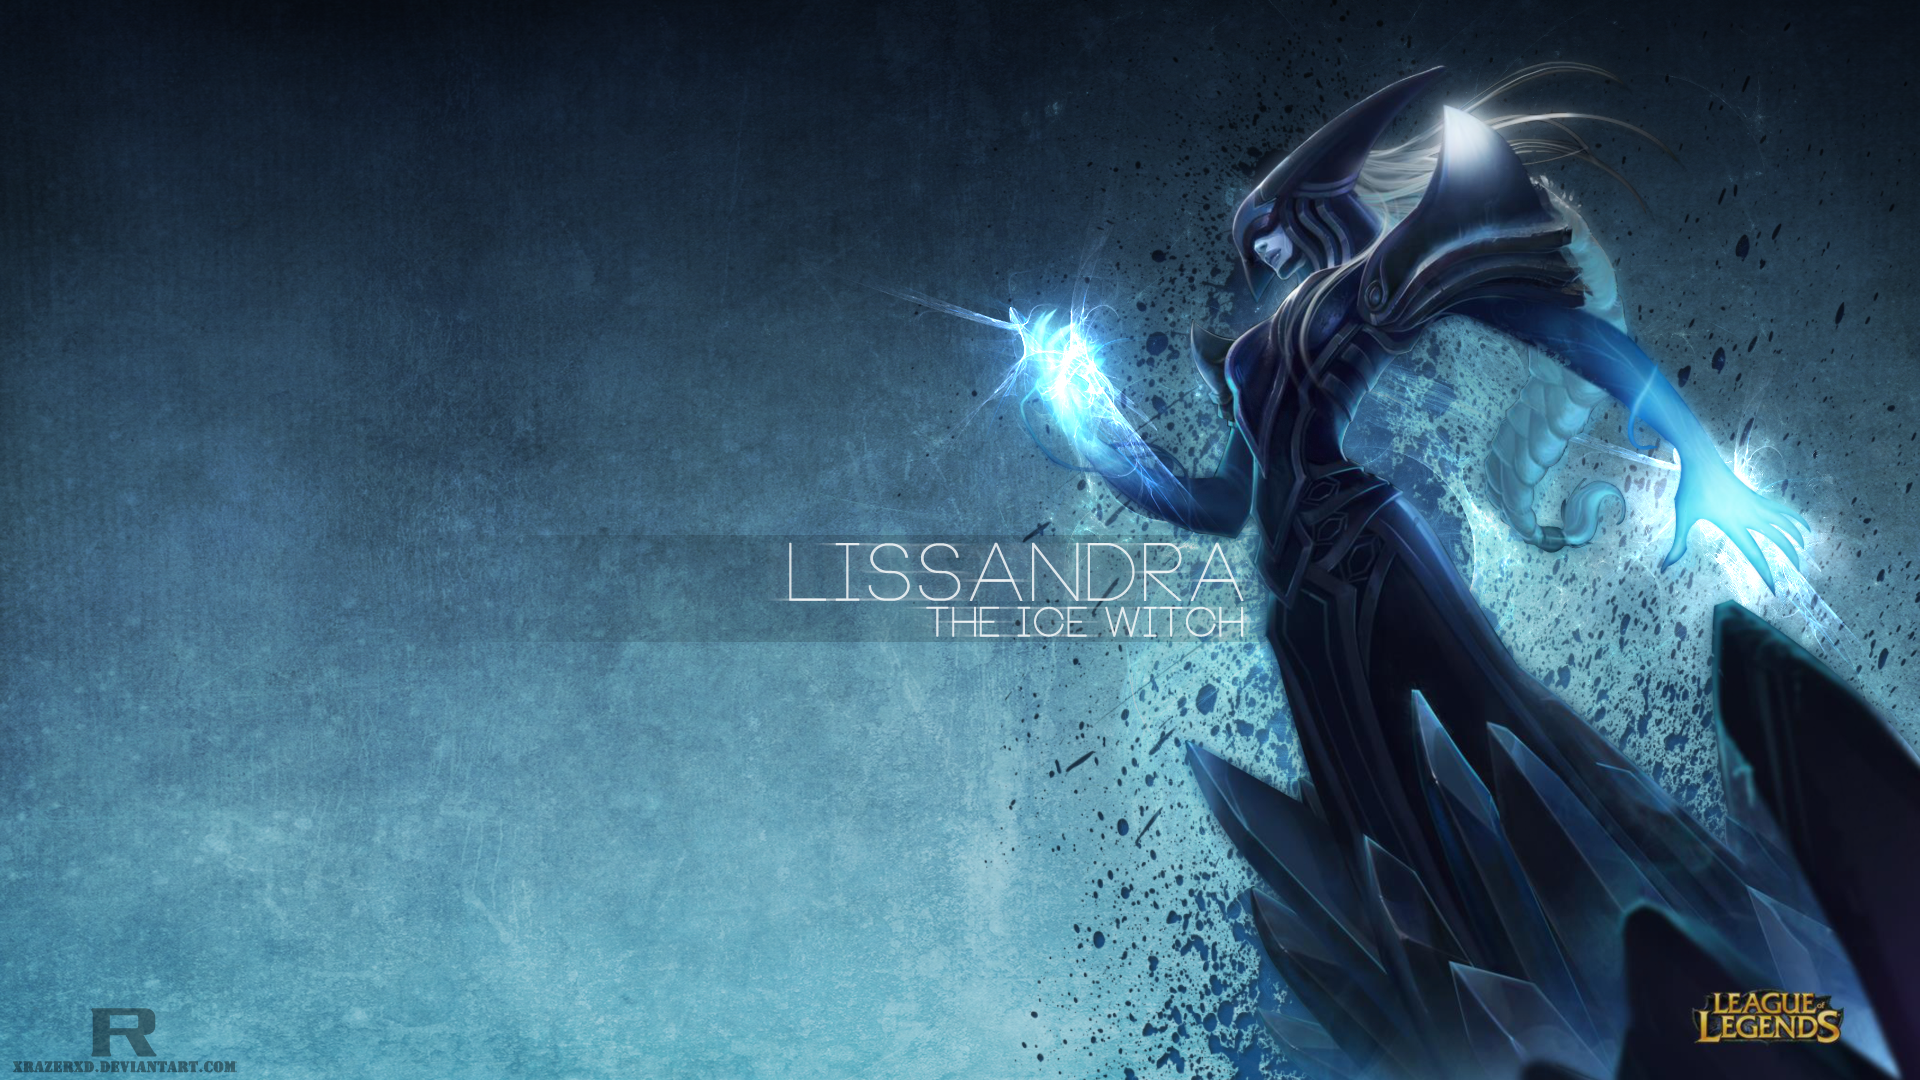 Lissandra League Of Legends 1920x1080